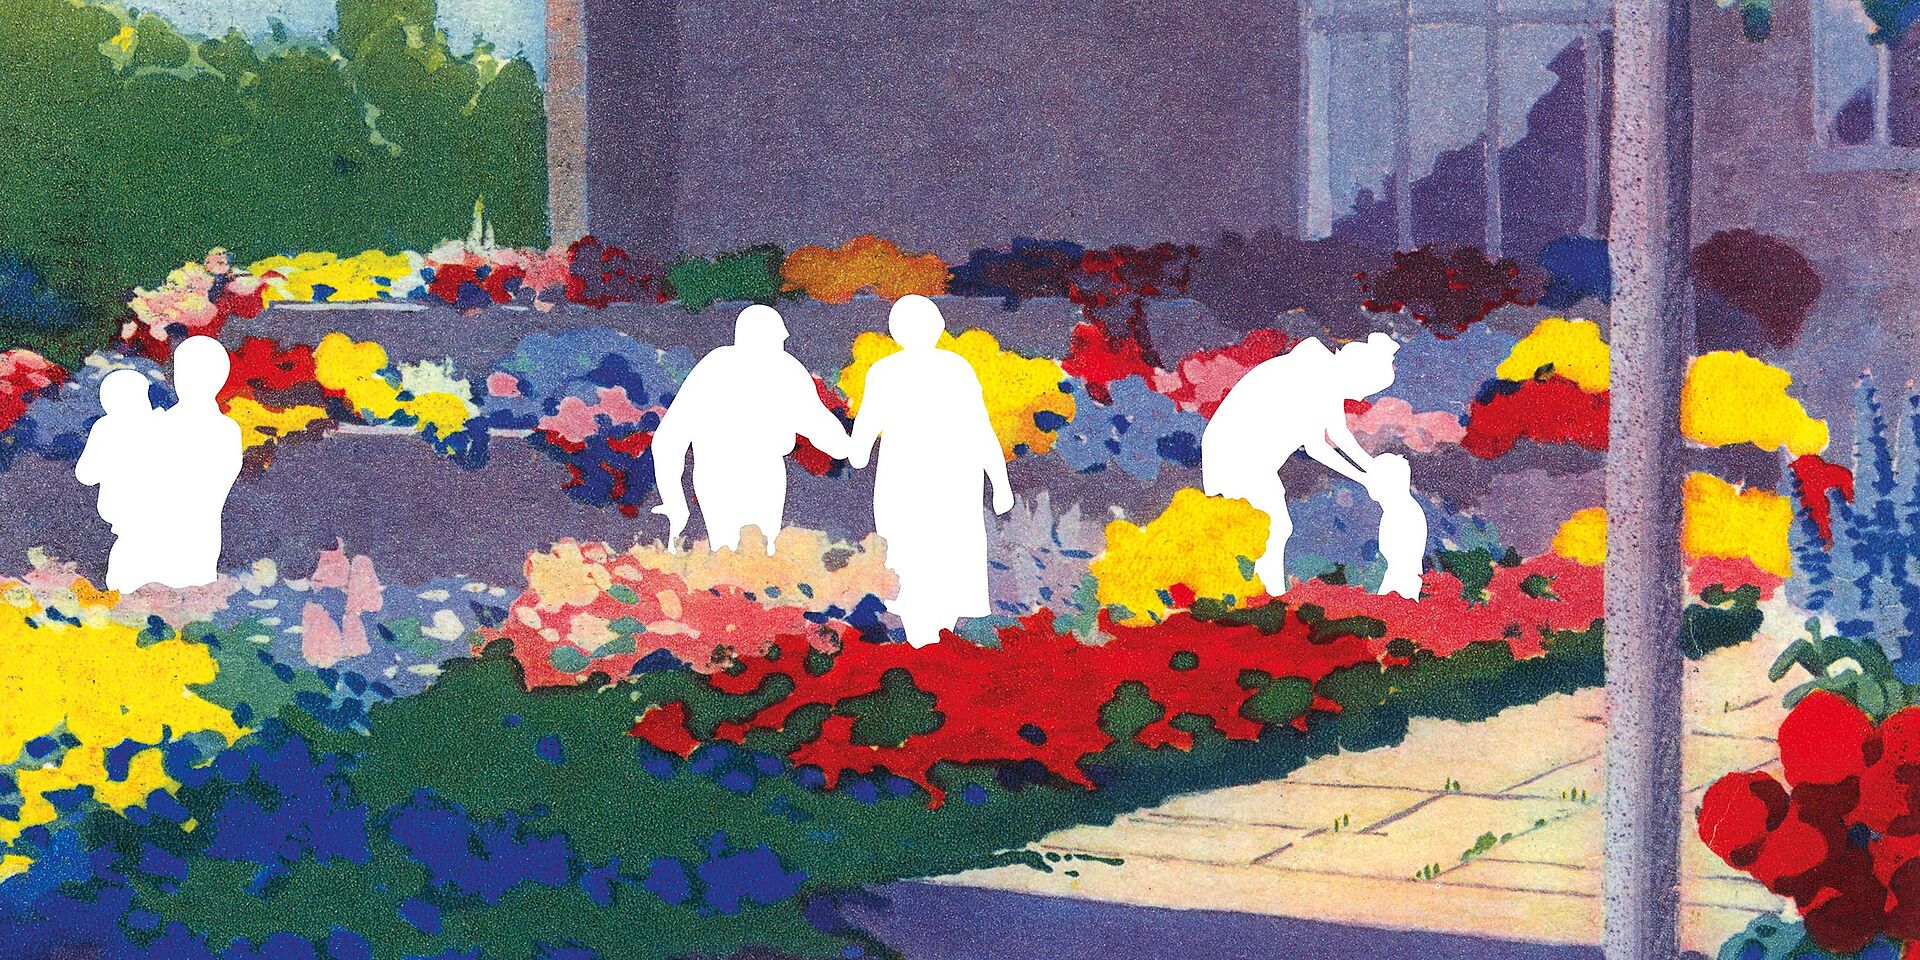 Zeichnung von lila Haus mit bunten Blumen davor und weißen Umrissen von Menschen